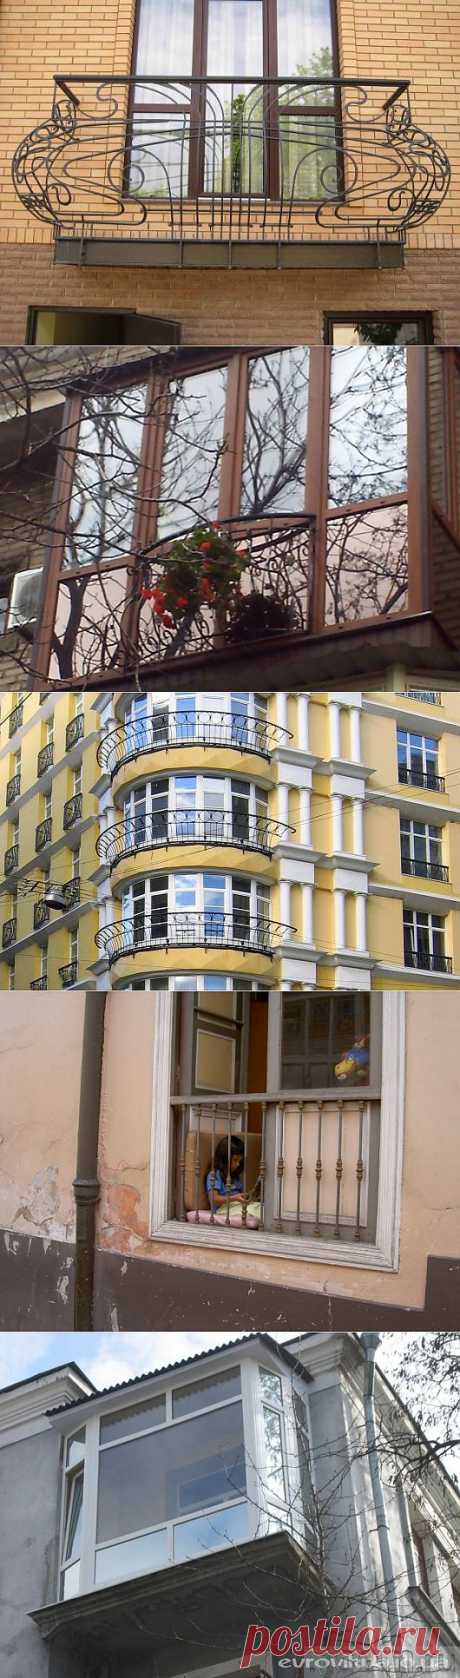 Новый тренд - французский балкон / Домоседы